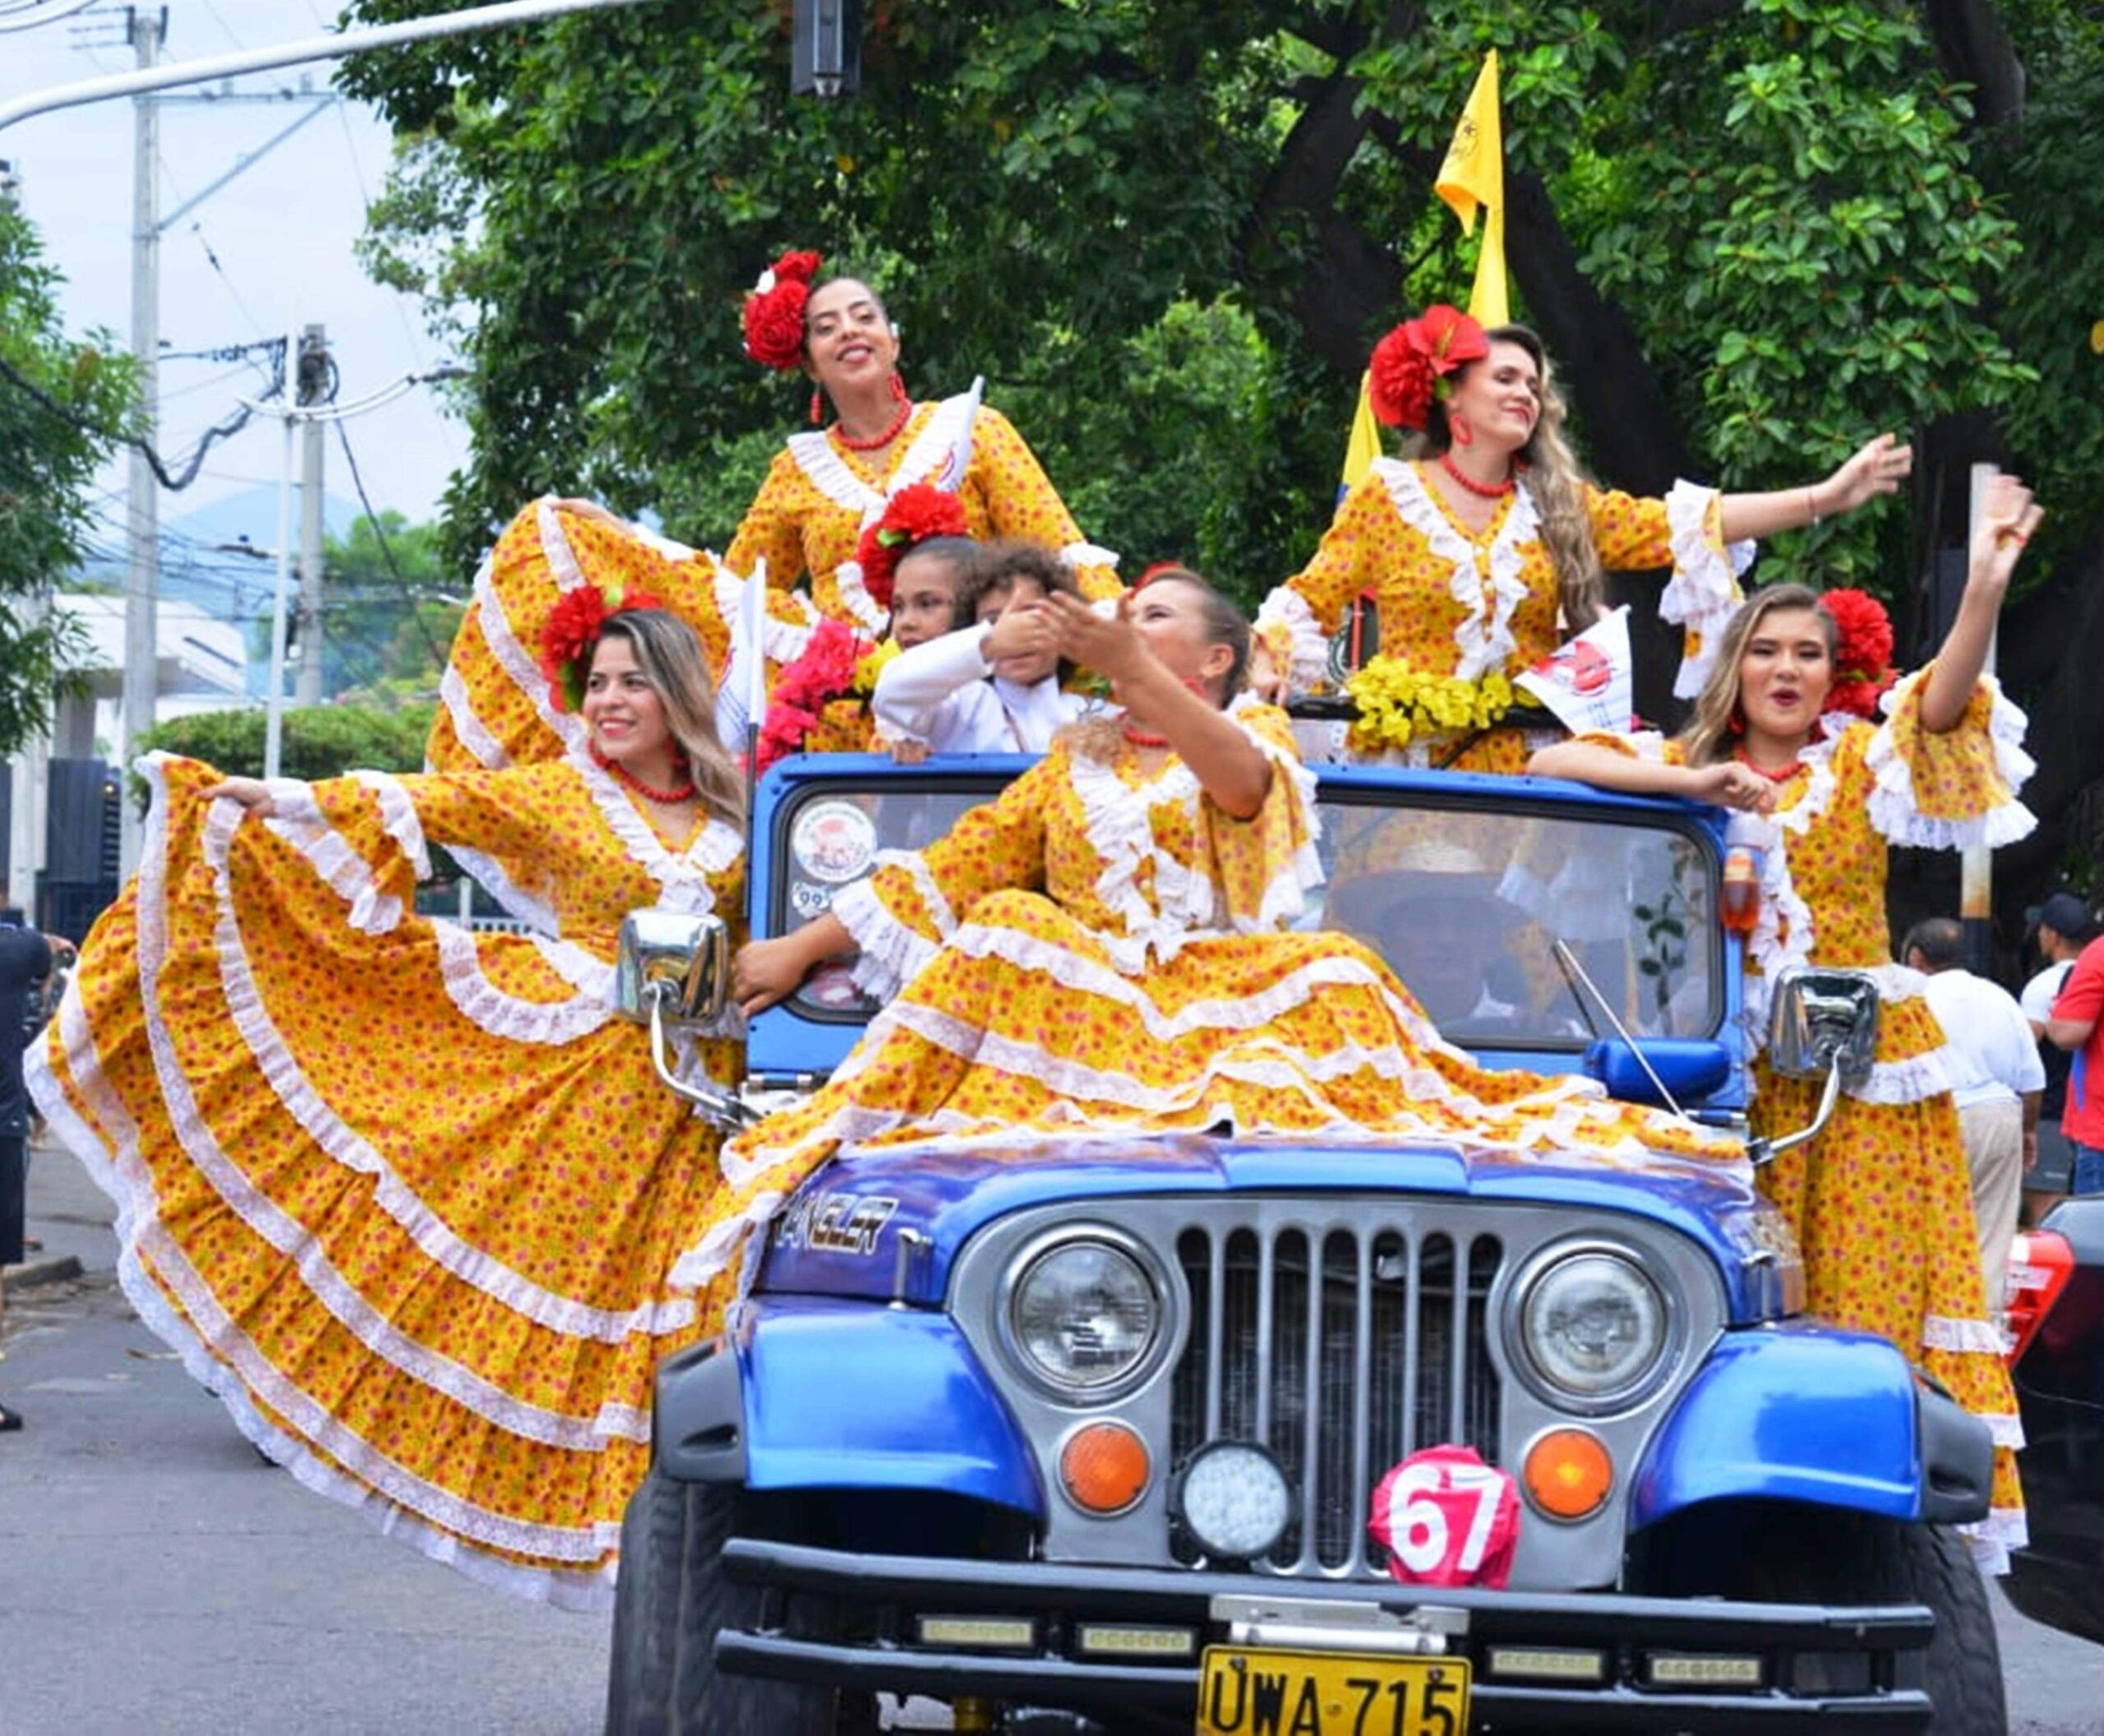 El Desfile de Jeep Willys Parranderos se convirtió en un encuentro rodante lleno de alegría y música